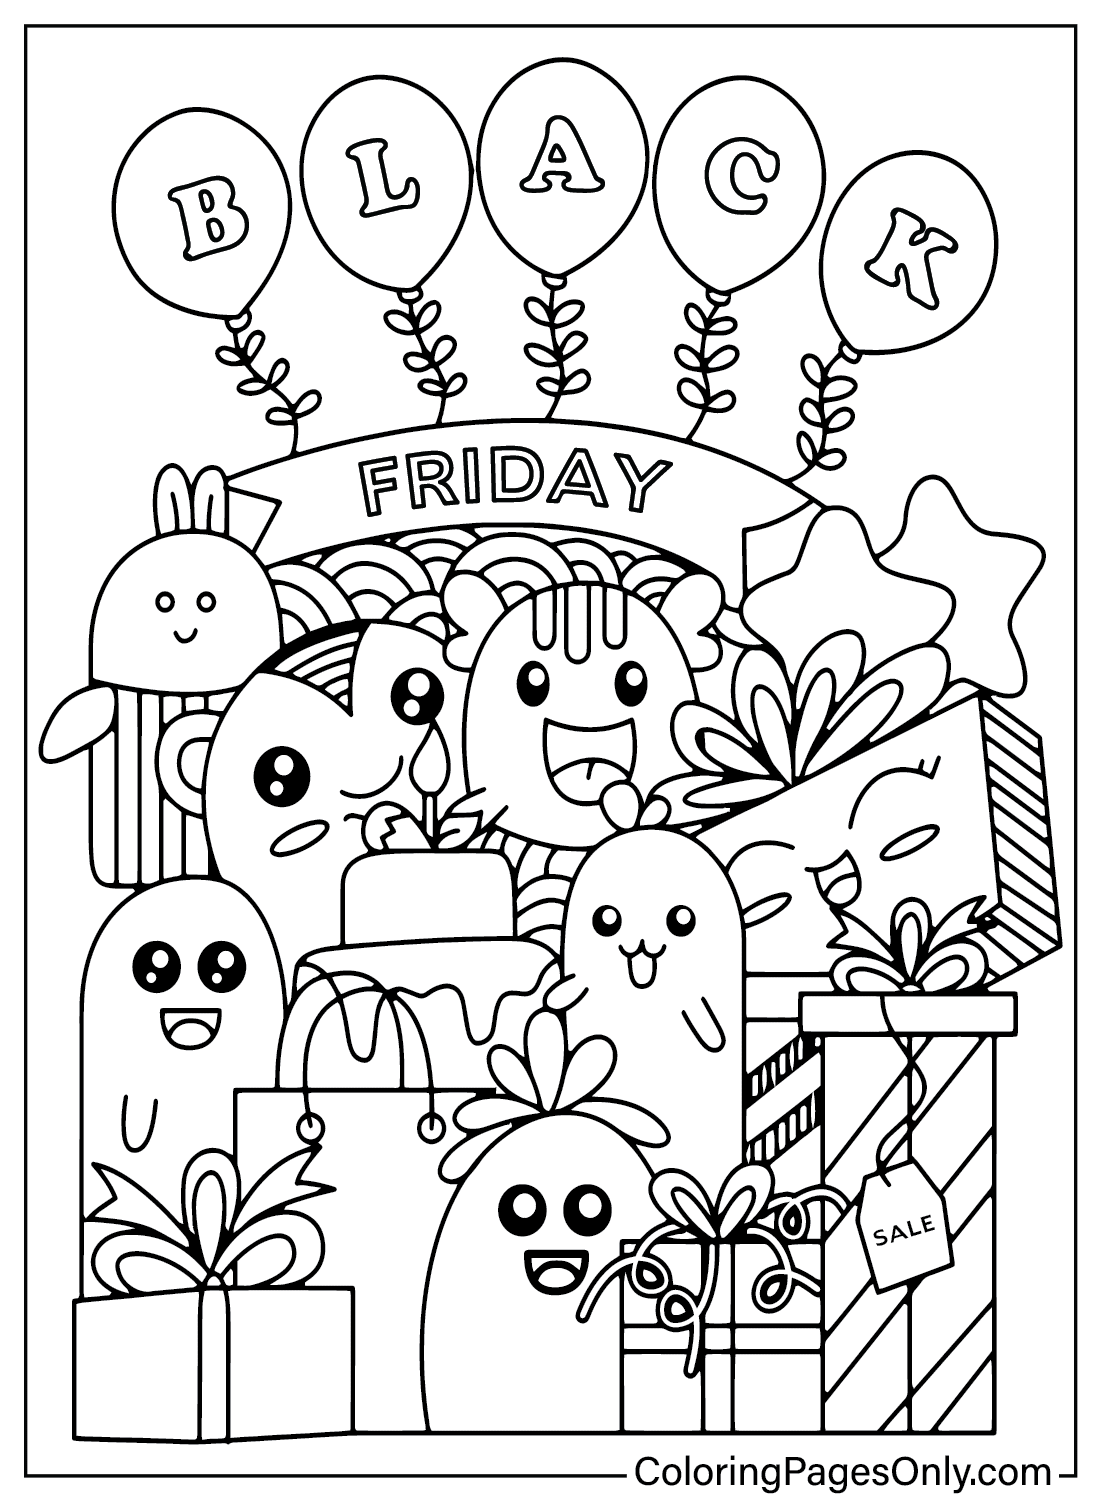 Página para colorear de Black Friday para imprimir gratis desde Black Friday